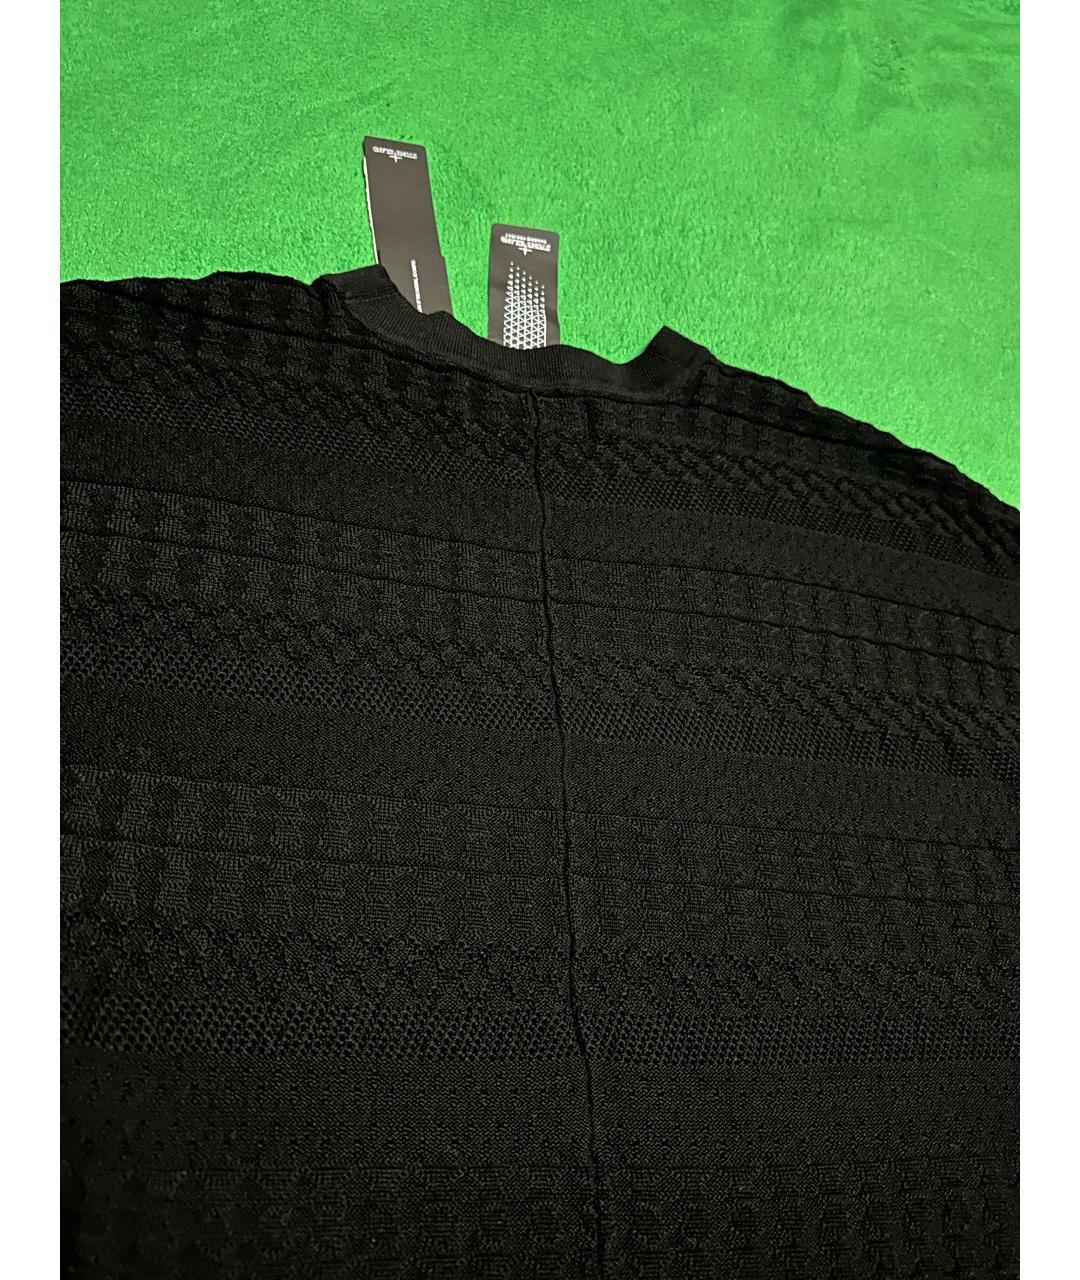 STONE ISLAND SHADOW PROJECT Черный хлопковый джемпер / свитер, фото 4